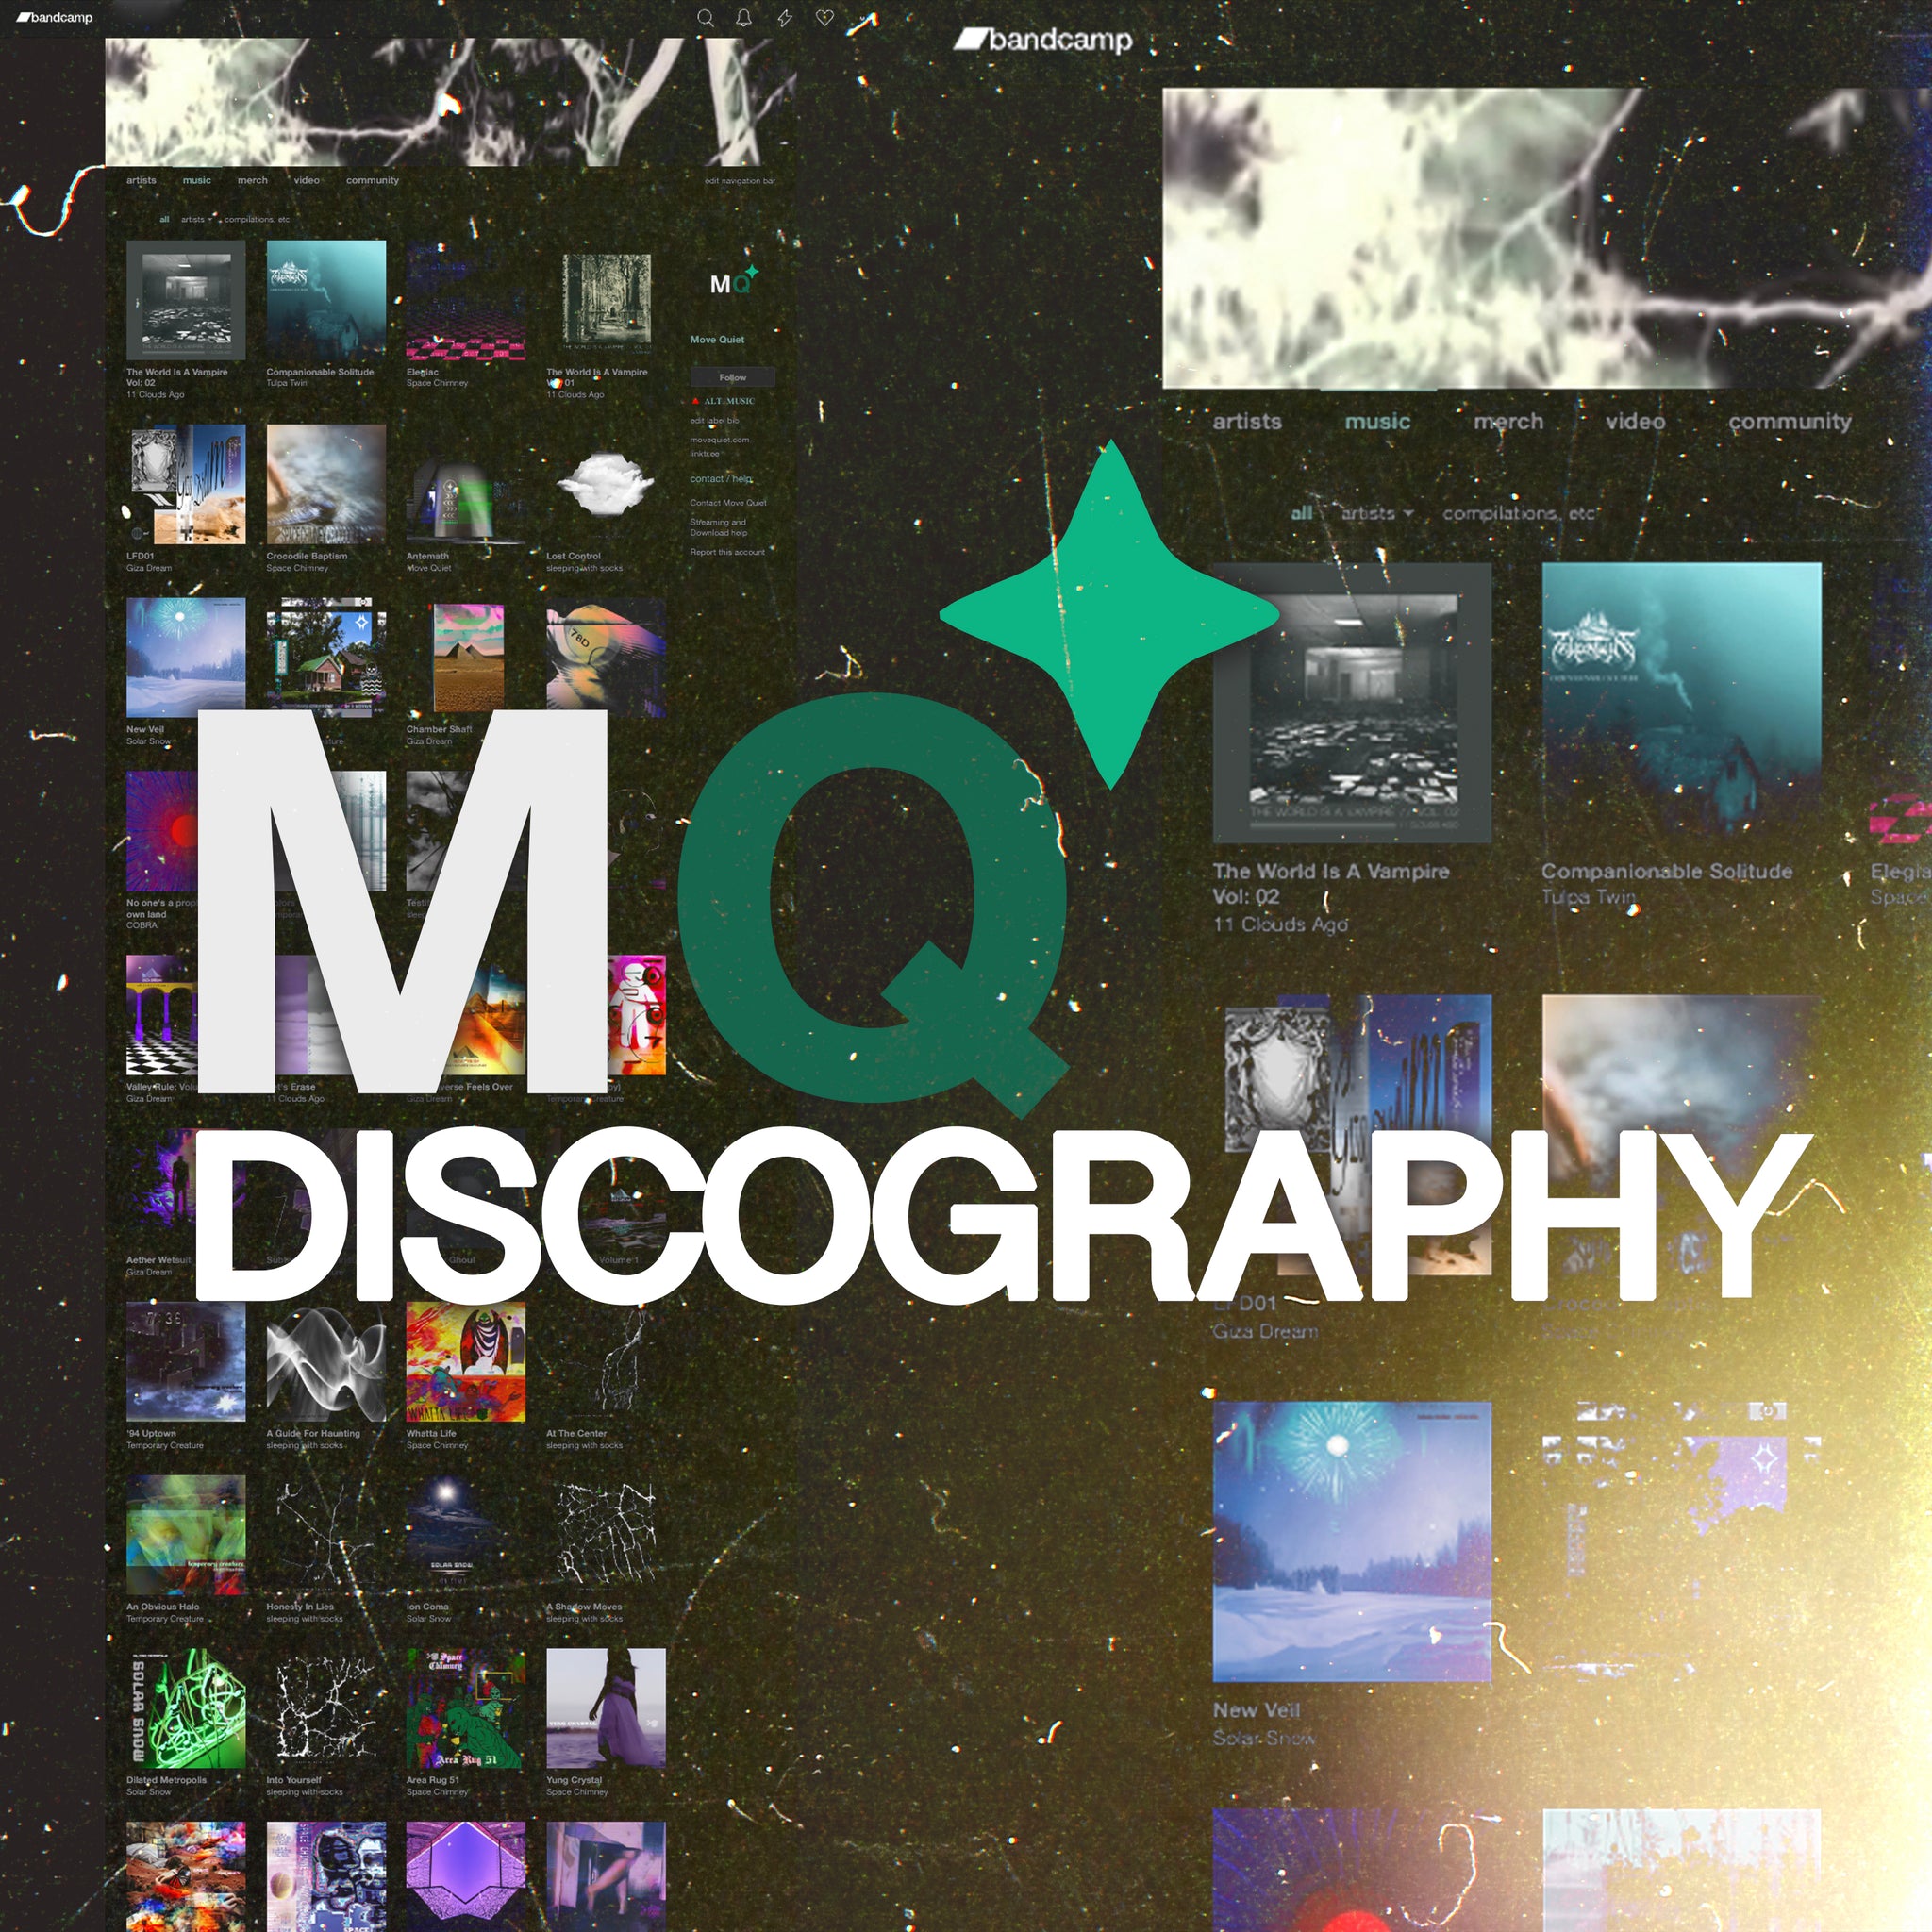 Entire Digital Discography